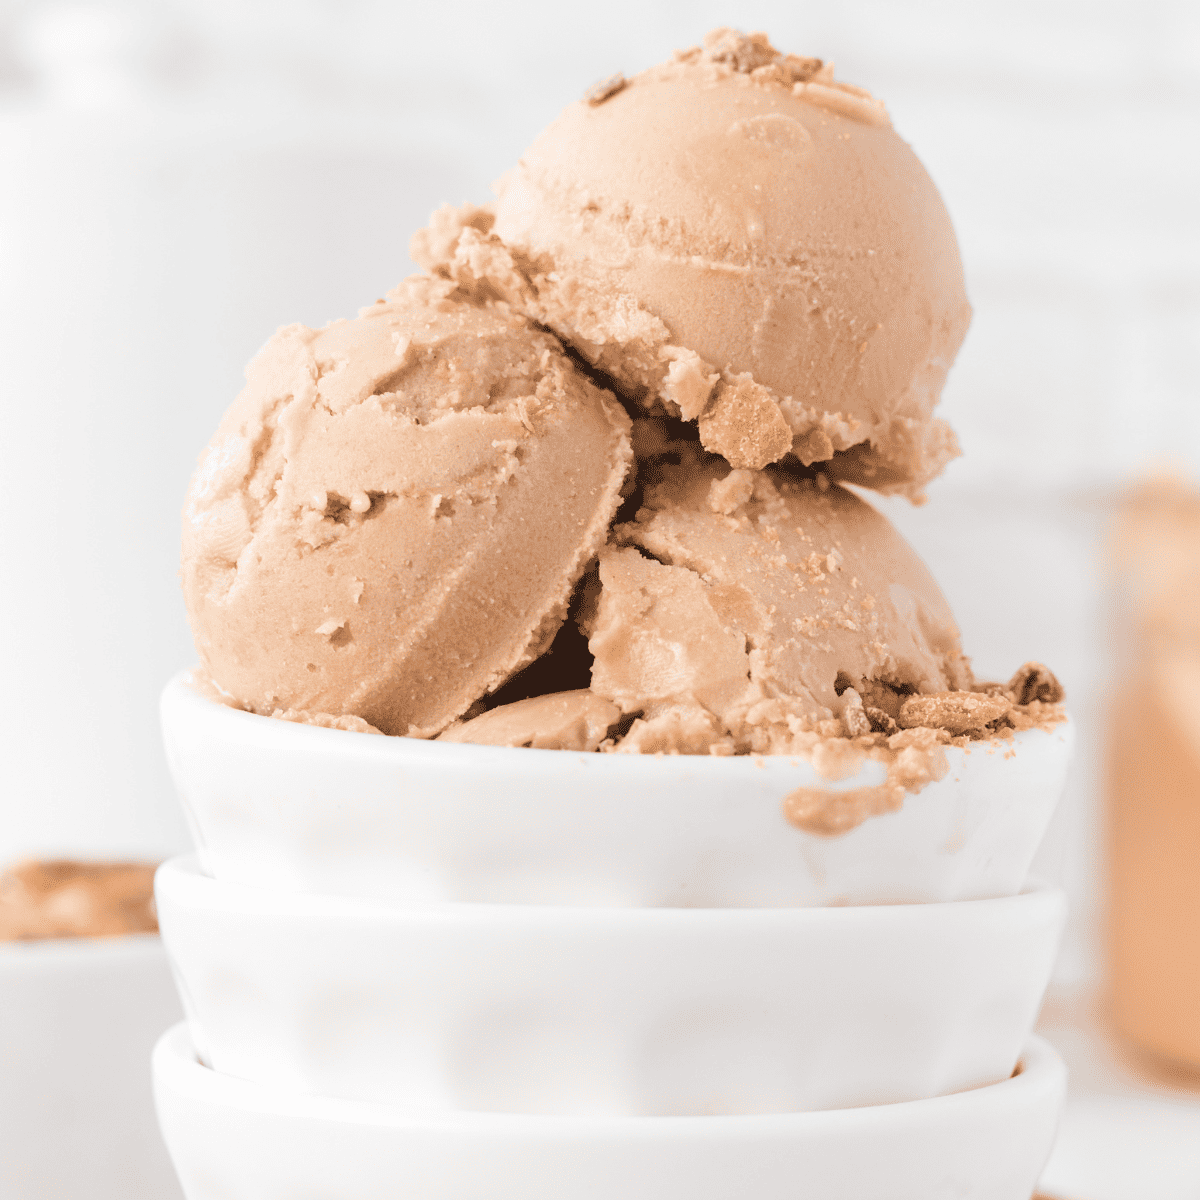 Ninja Creami Deluxe Cookbook: The Latest & Amazing Ice Cream, Sorbet,  Gelato, Milkshake, Smoothie Bowl, Lite Ice Cream, and Mix-in Recipes for